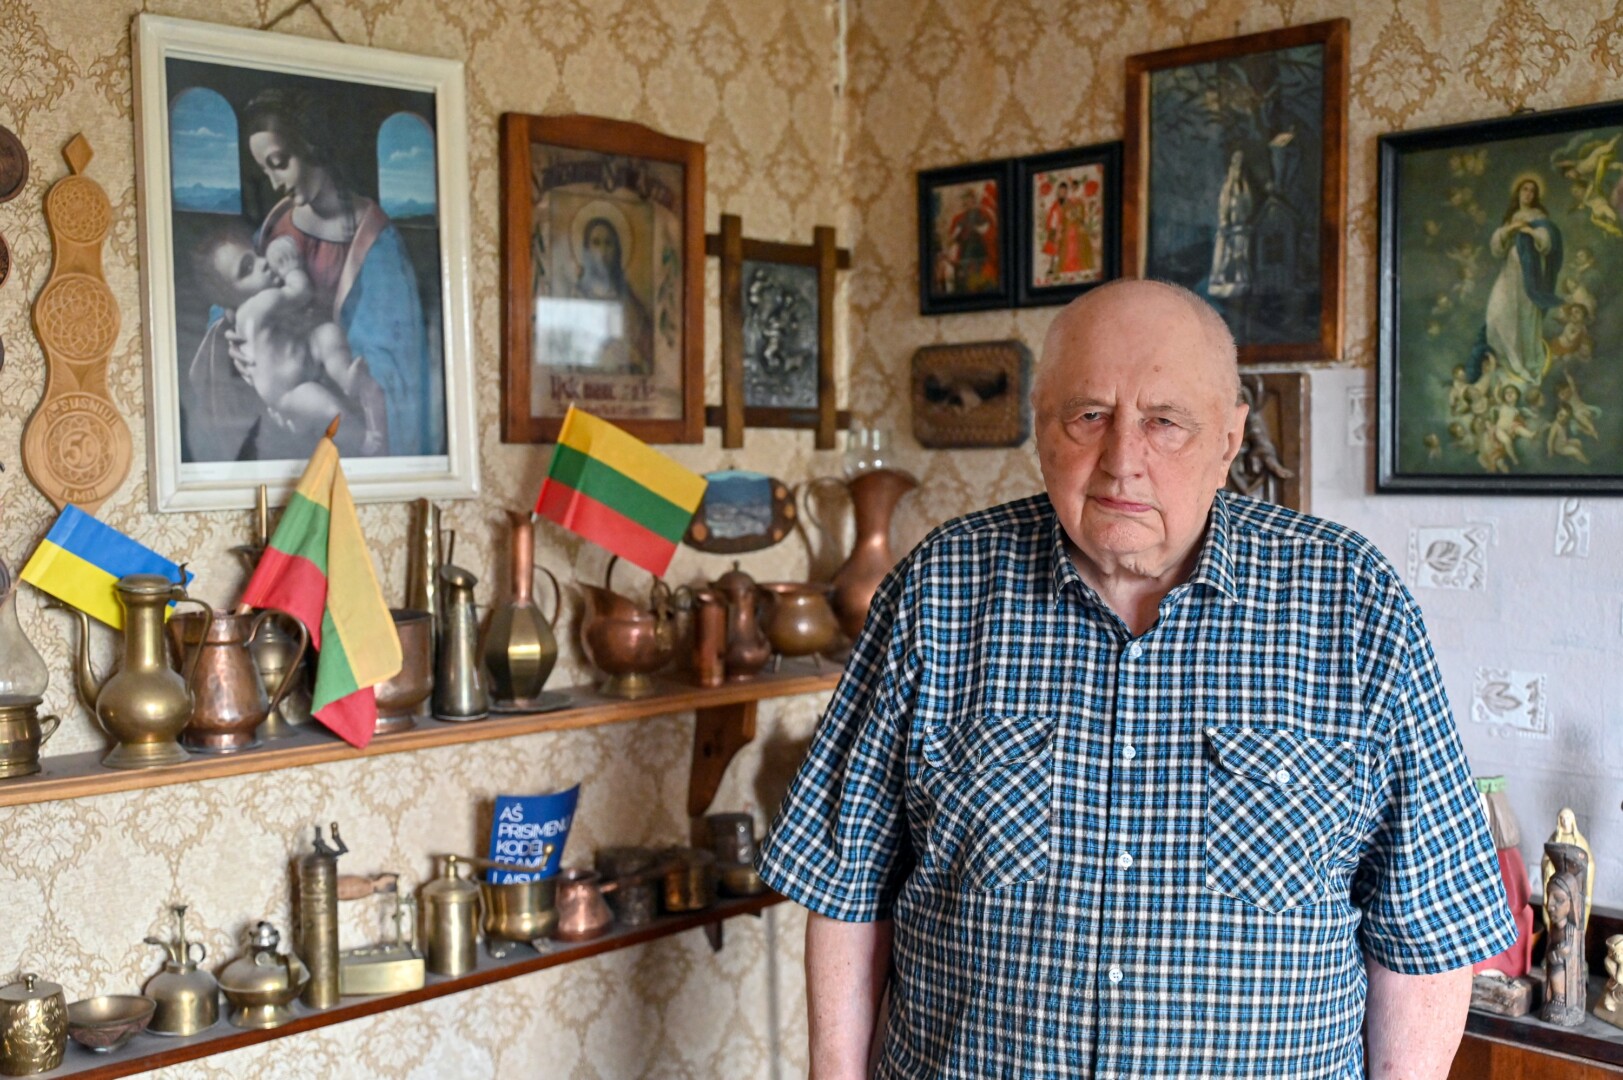 Politinis kalinys, kovojęs už laisvą Lietuvą, Algimantas Susnys sovietiniuose lageriuose praleido aštuonerius metus. Ten sako sutikęs pačių įvairiausių žmonių – likimas suvedė tiek su budeliais, tiek ir su iškiliausiomis asmenybėmis.